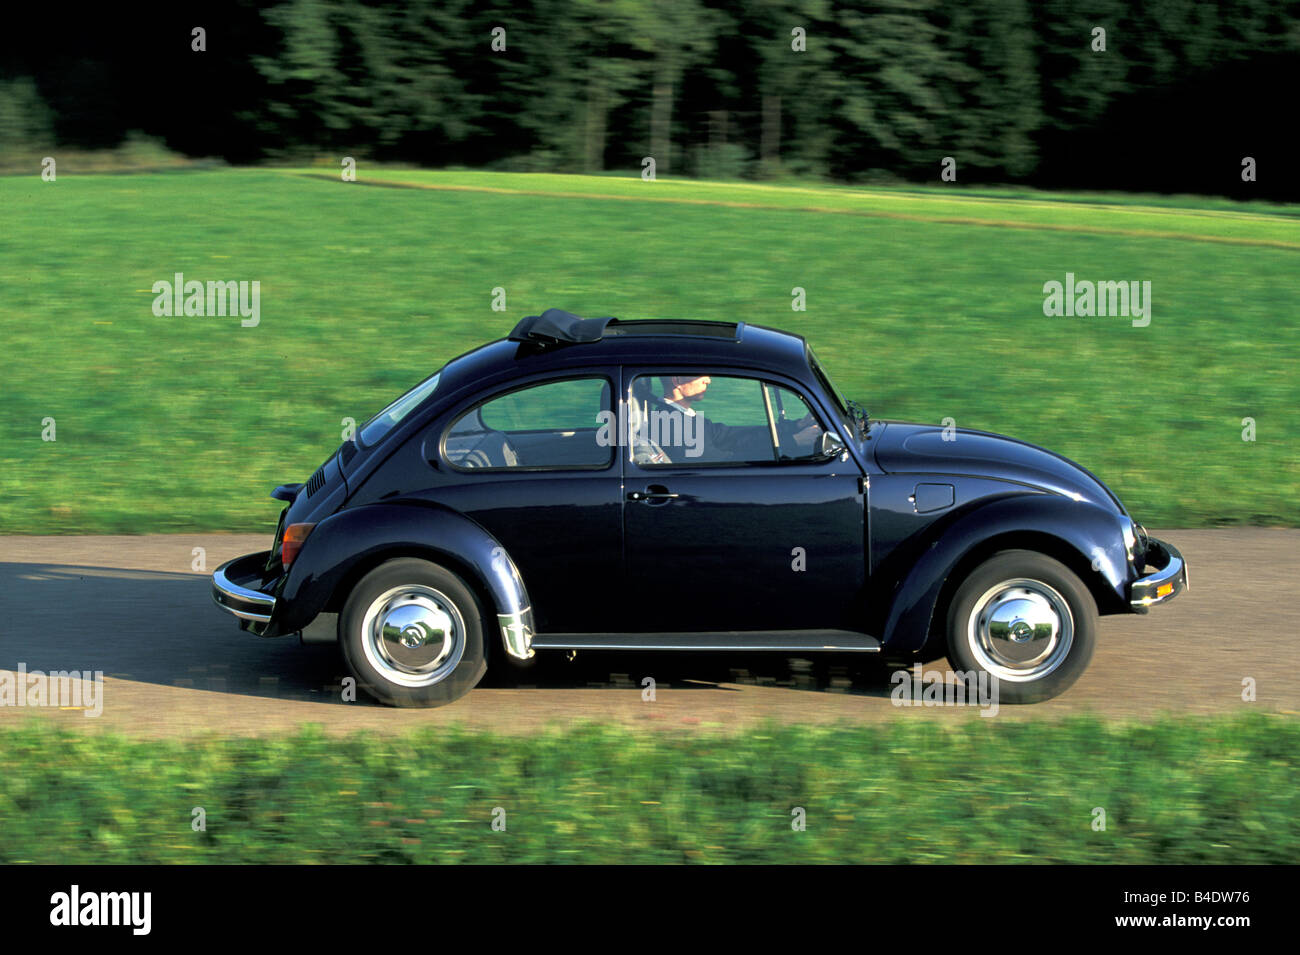 Coche, VW Volkswagen Volkswagen Beetle, modelo del año 1978-2003, México beetle, limusina, negro, país por carretera, conducción, vista lateral Foto de stock